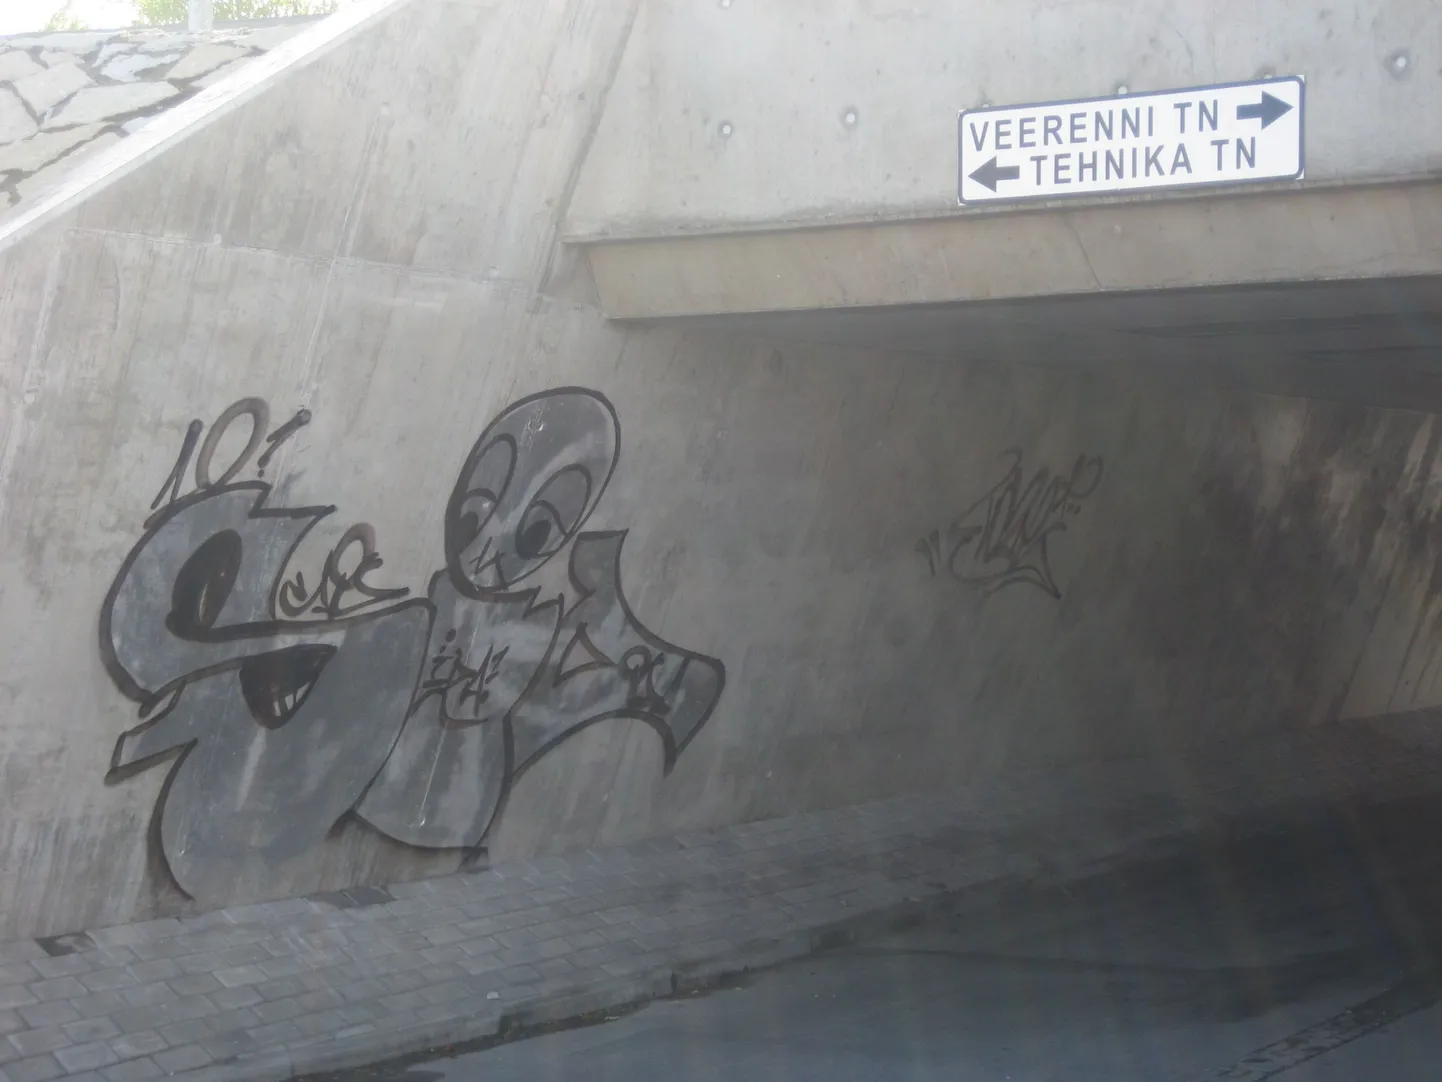 Veerenni-Tehnika tänava jalakäijate tunnelis on puhastamise jälgi küll näha, kuid ka grafiti on täiesti olemas.